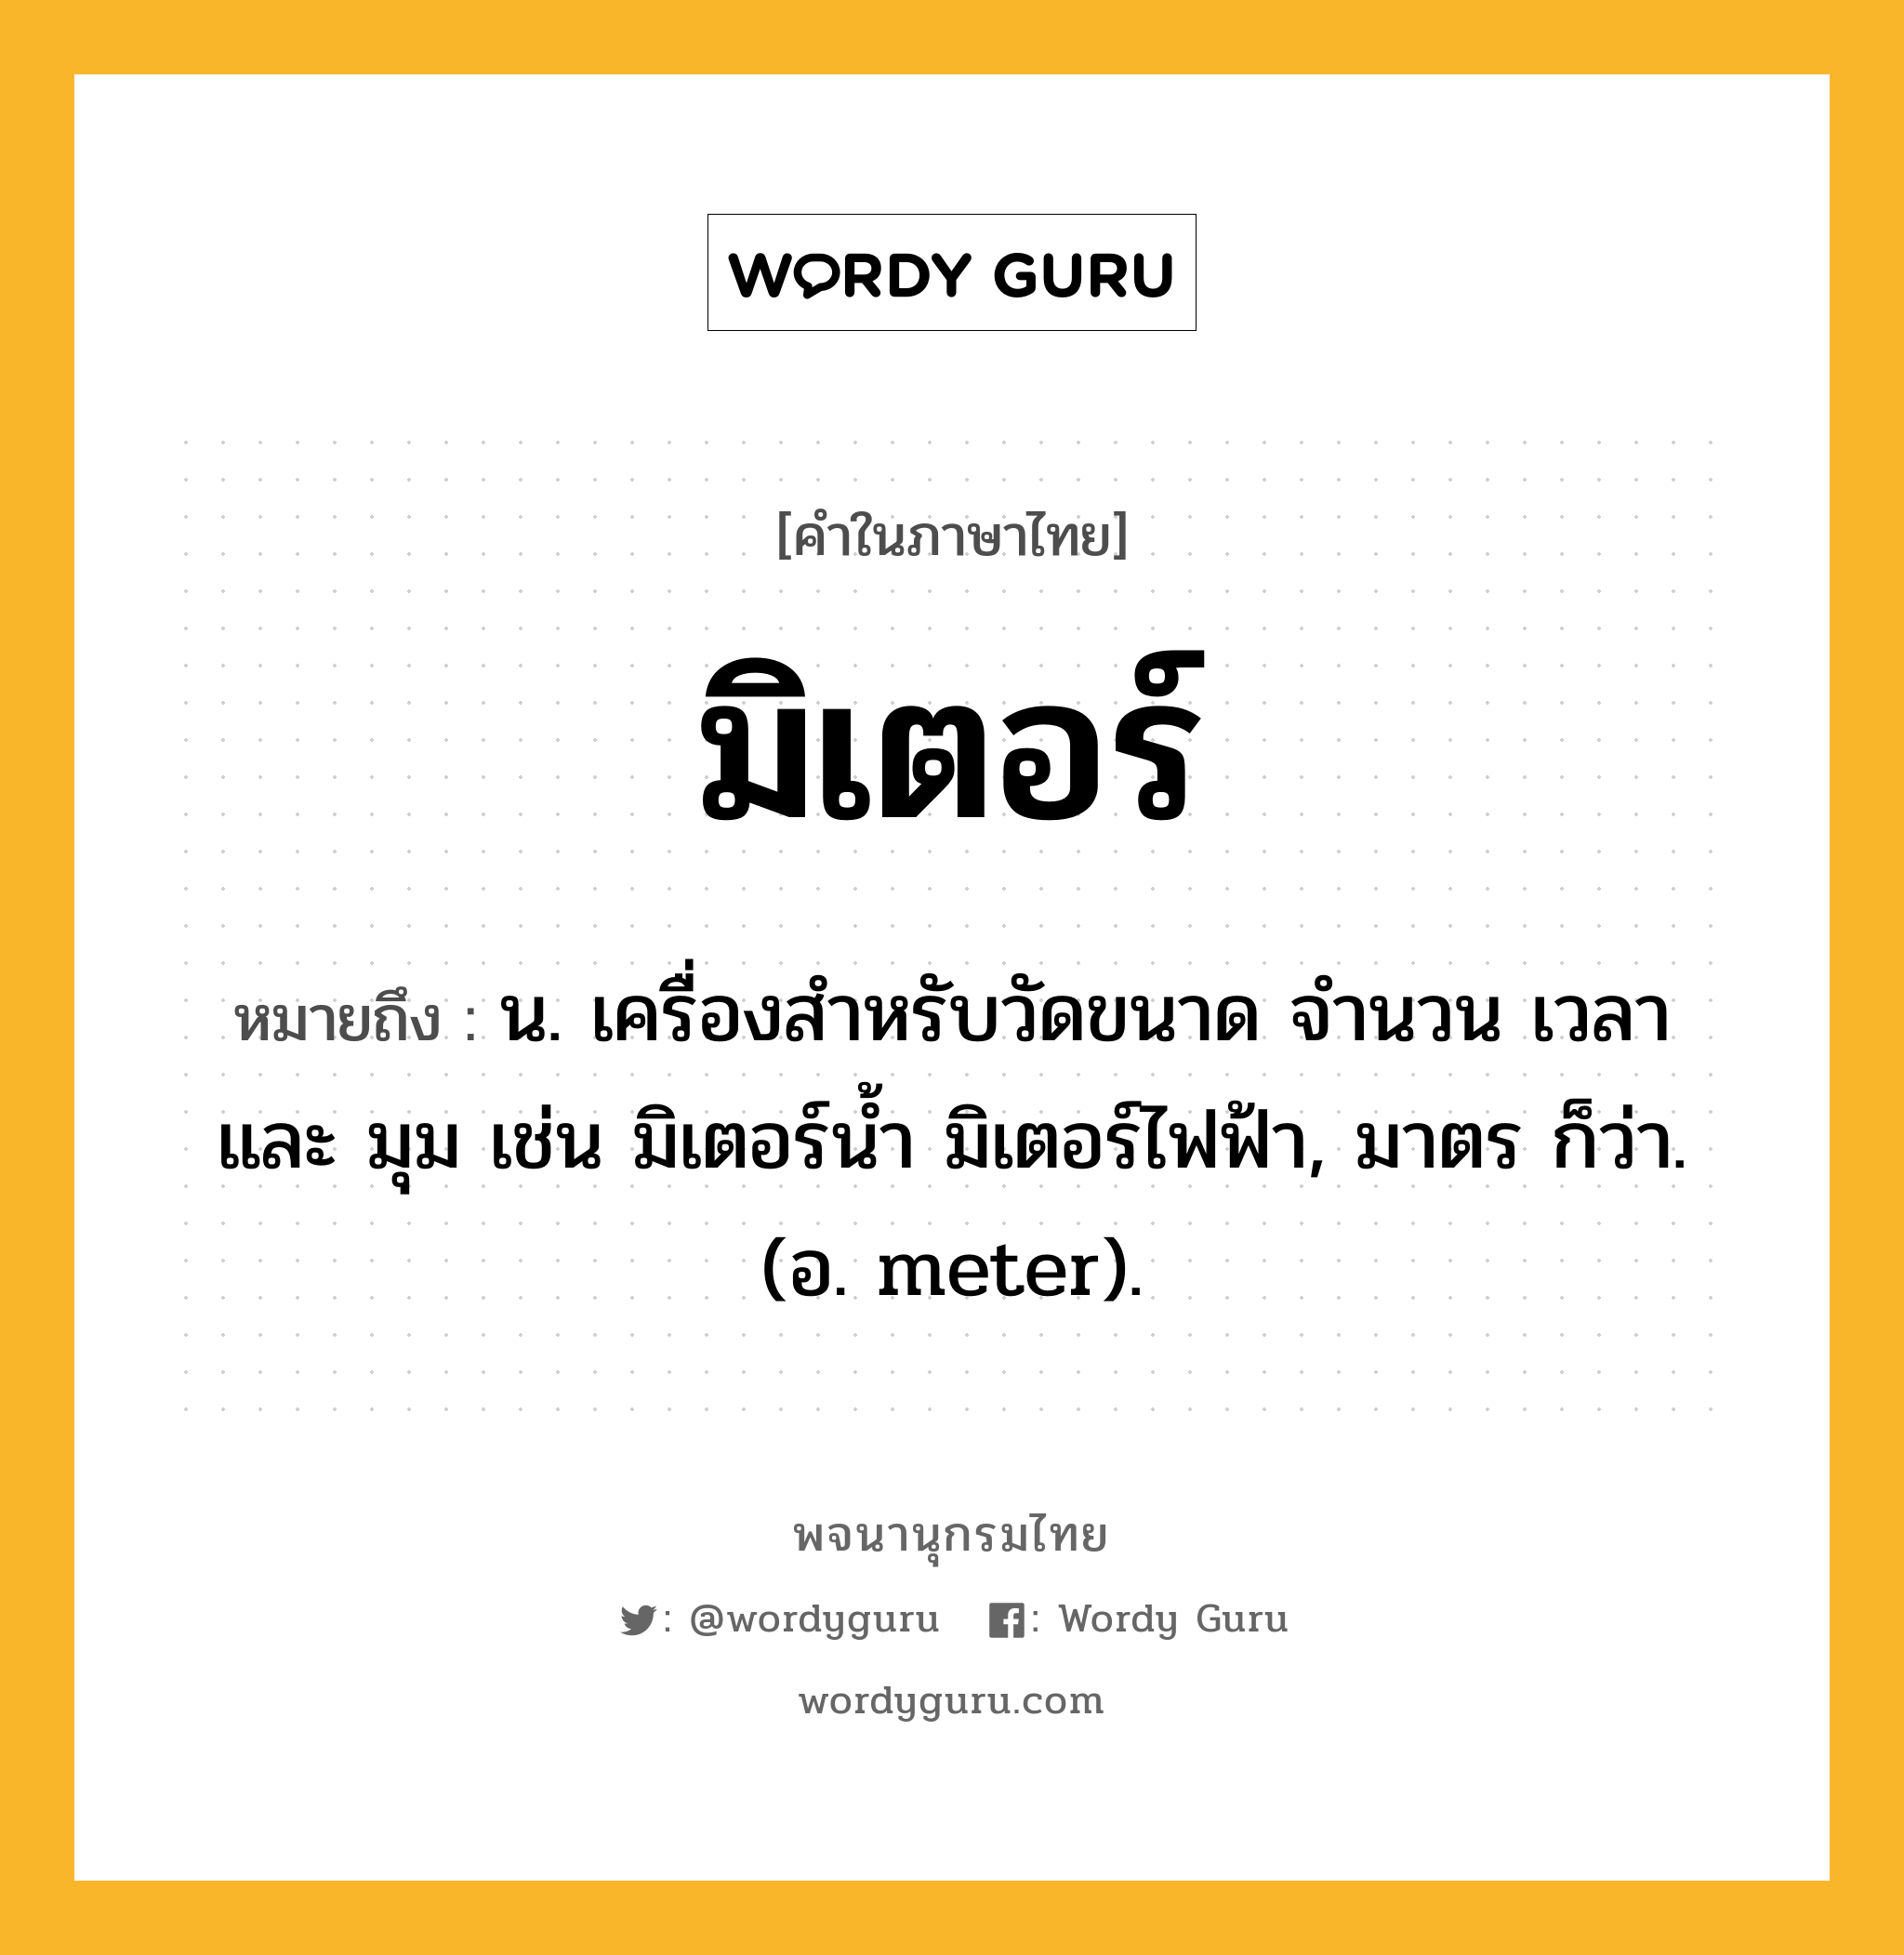 มิเตอร์ ความหมาย หมายถึงอะไร?, คำในภาษาไทย มิเตอร์ หมายถึง น. เครื่องสำหรับวัดขนาด จำนวน เวลา และ มุม เช่น มิเตอร์น้ำ มิเตอร์ไฟฟ้า, มาตร ก็ว่า. (อ. meter).